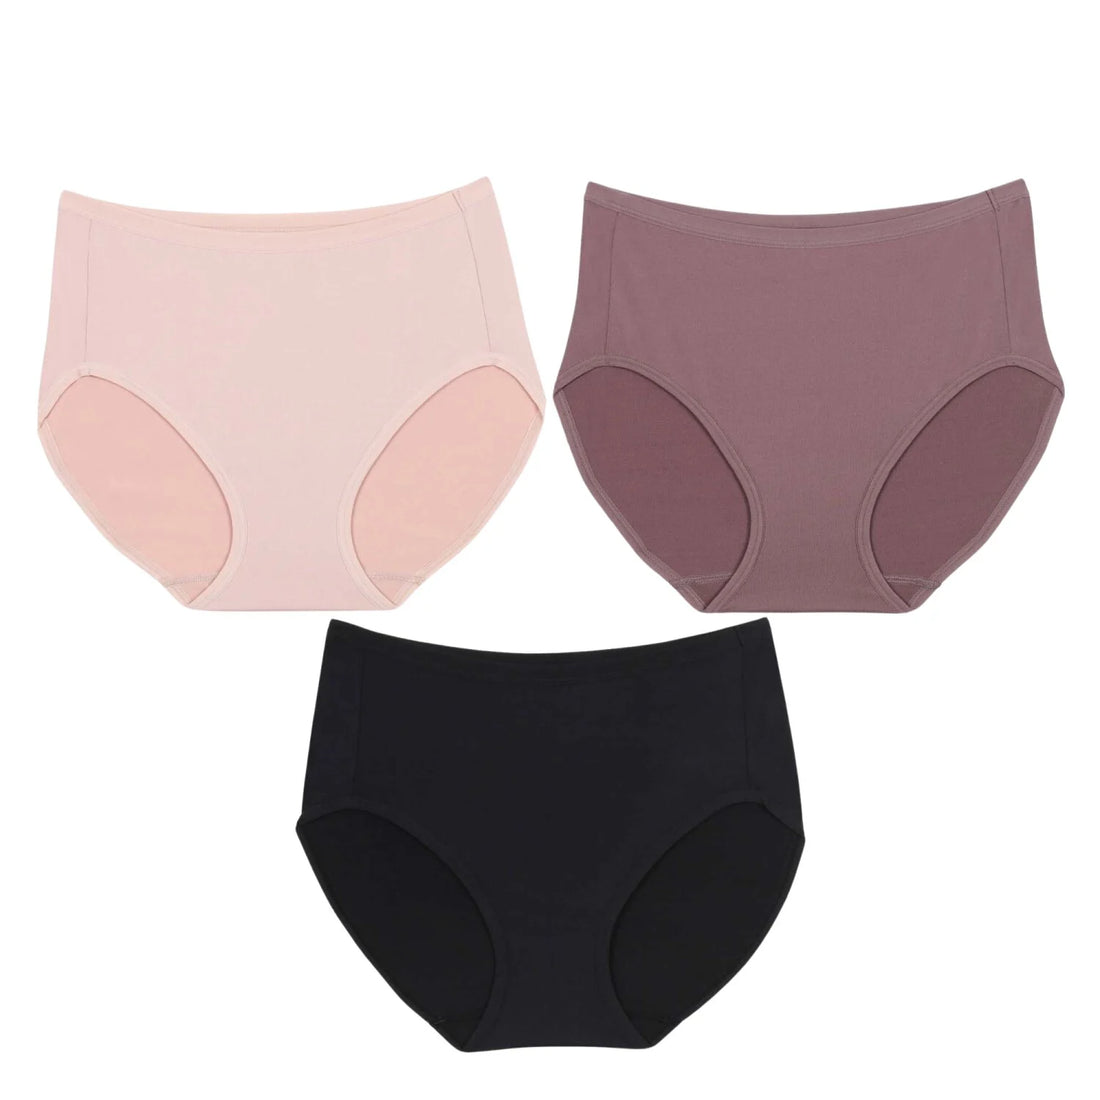 Wacoal Panty pack กางเกงในใส่สบาย รูปแบบเต็มตัว set 3 ชิ้น รุ่น WU4T34 คละสี (สีเบจ-สีดำ-สีน้ำตาลไหม้)